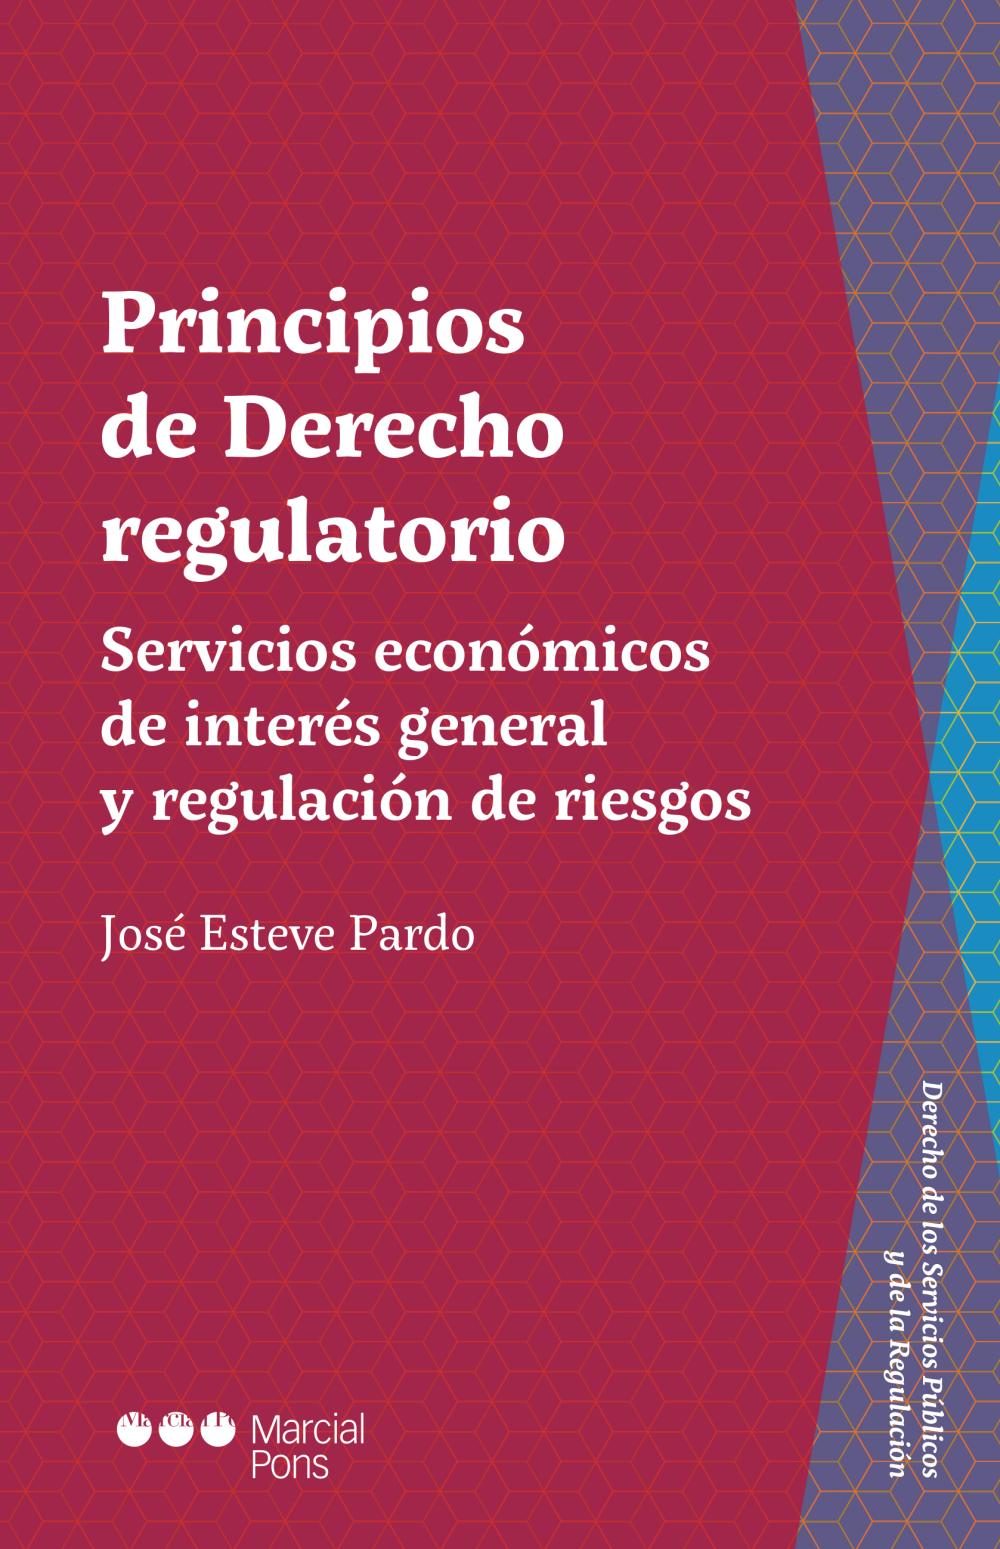 Principios de Derecho regulatorio | Katakrak - Librería, Cafetería,  Editorial, cooperativa